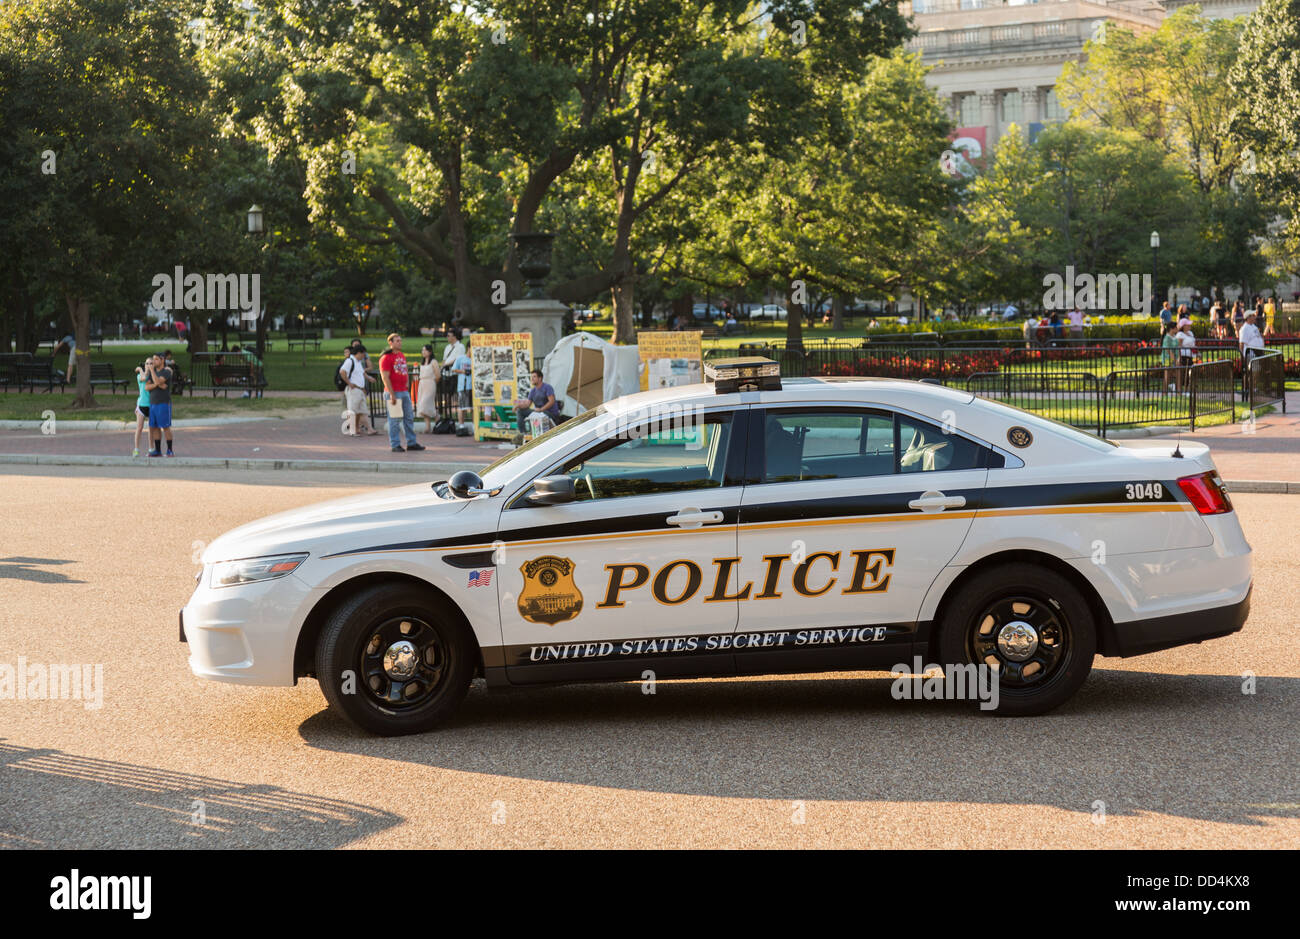 United States Secret Service (USSS) division en uniforme voiture de police garée sur Pennsylvania Avenue, Washington DC Banque D'Images